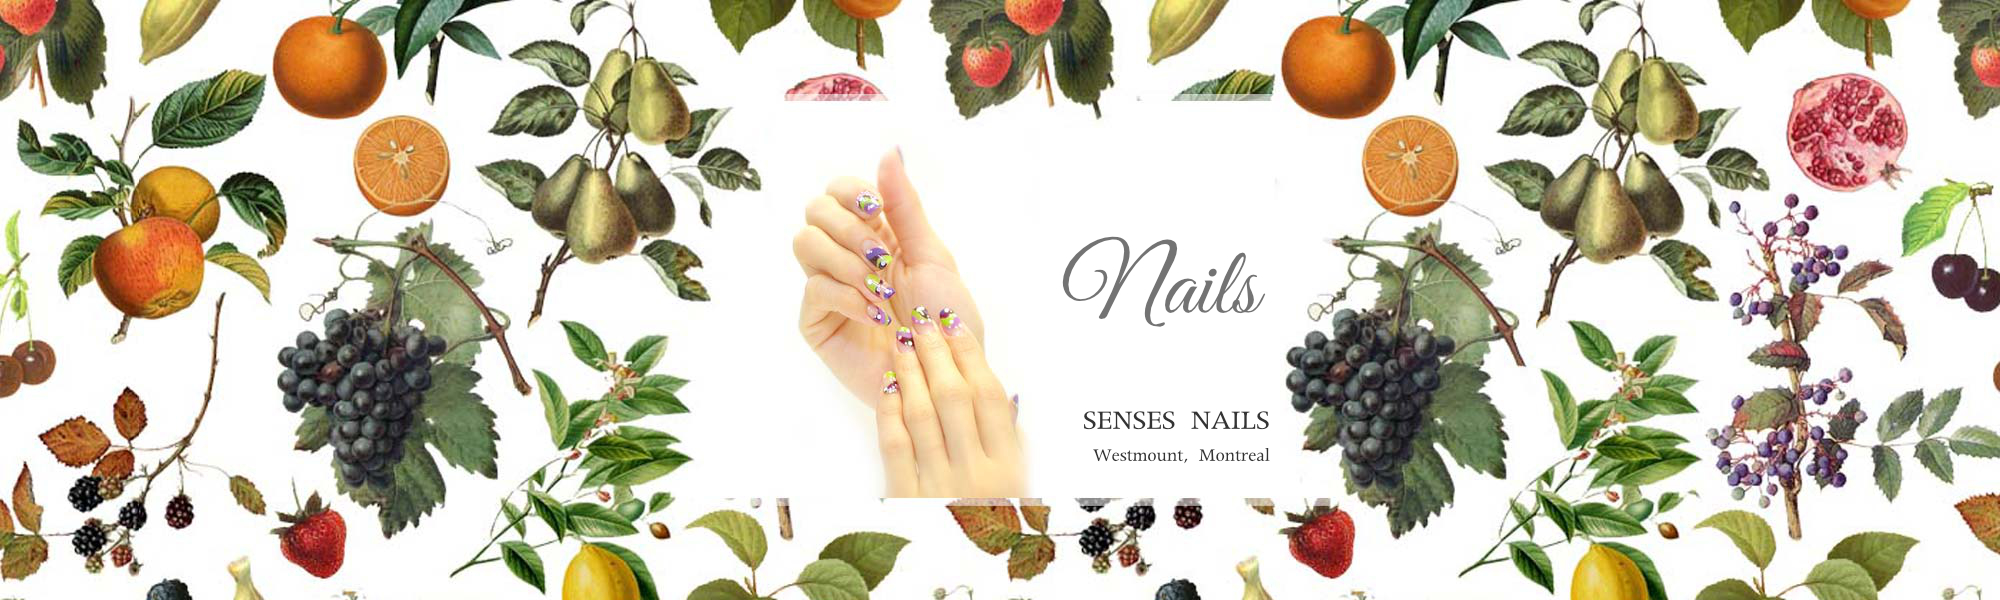 SENSES NAILS Nails